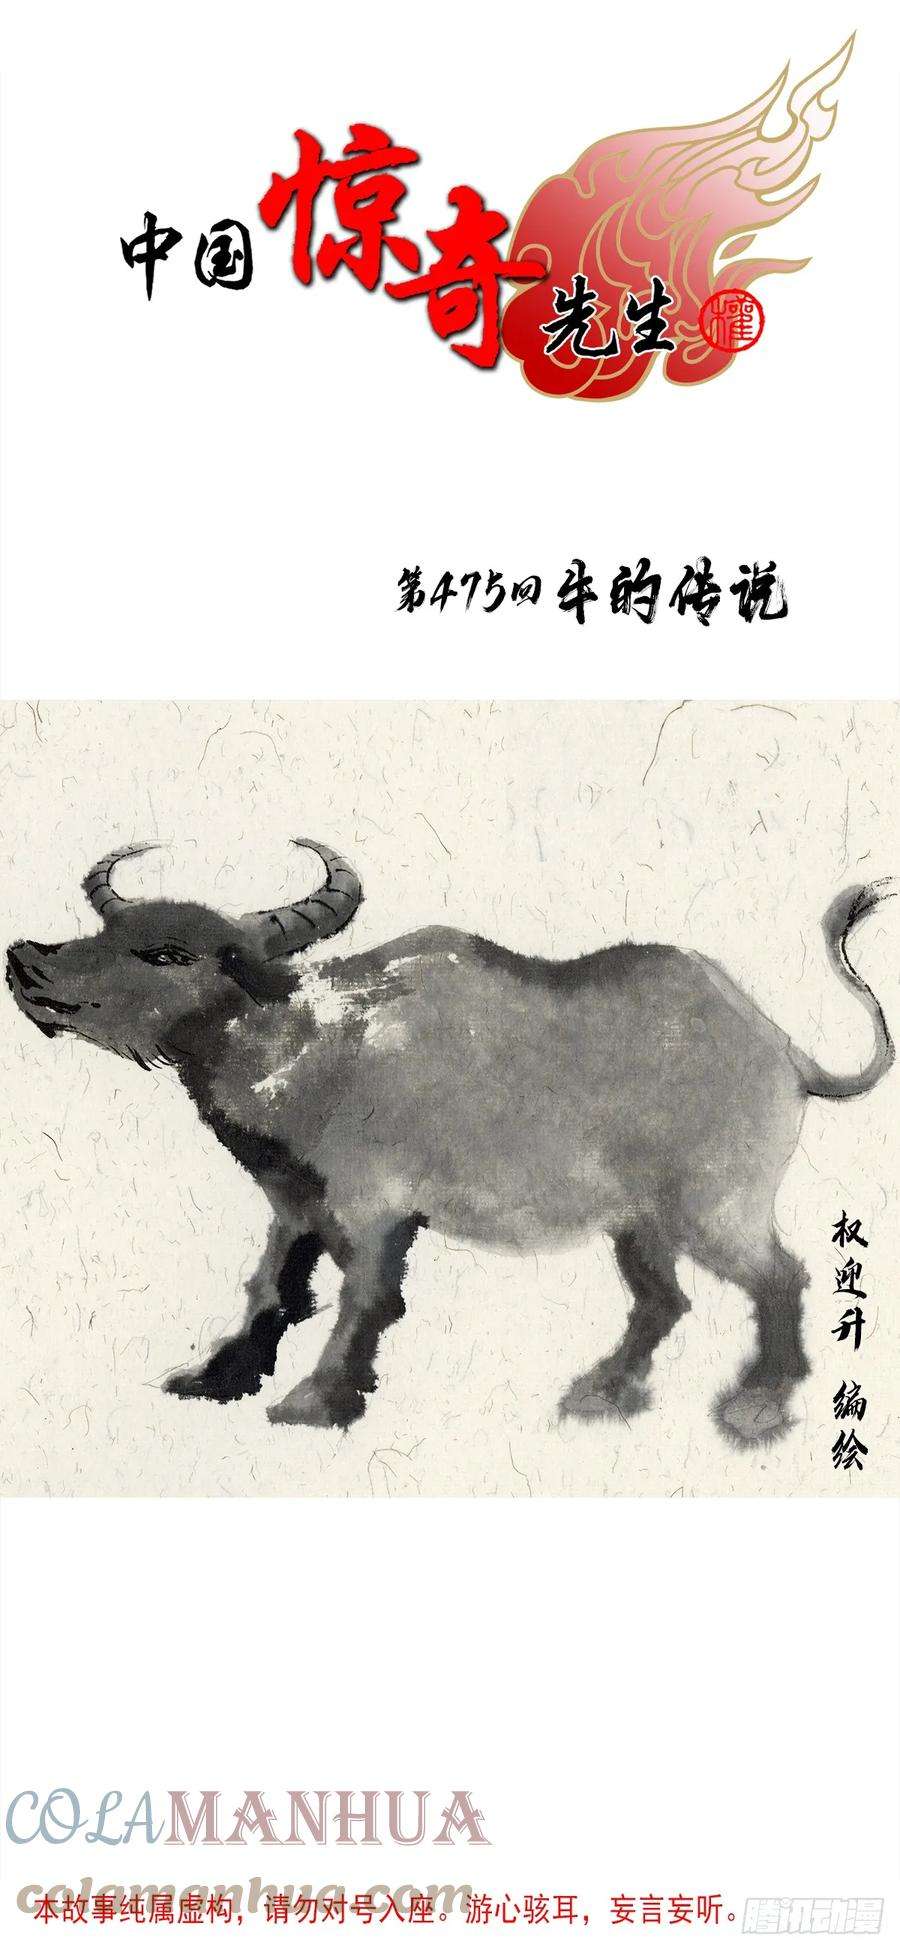 中国惊奇先生1456 牛人传说